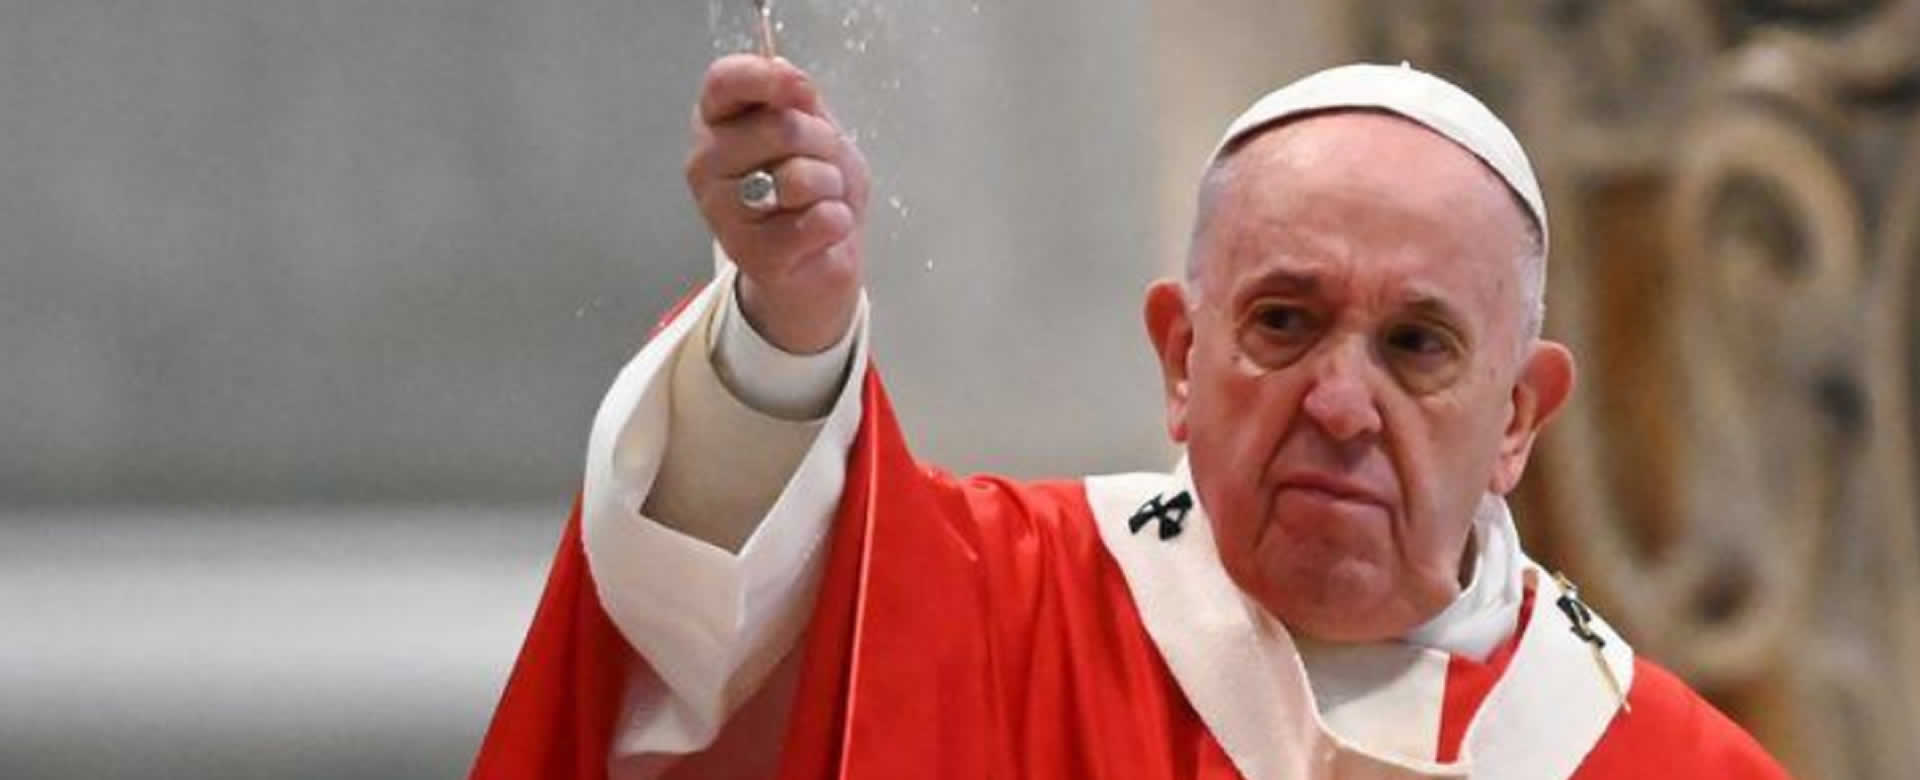 Pontífice: “La pandemia puede ayudar a transformar el miedo en servicio”